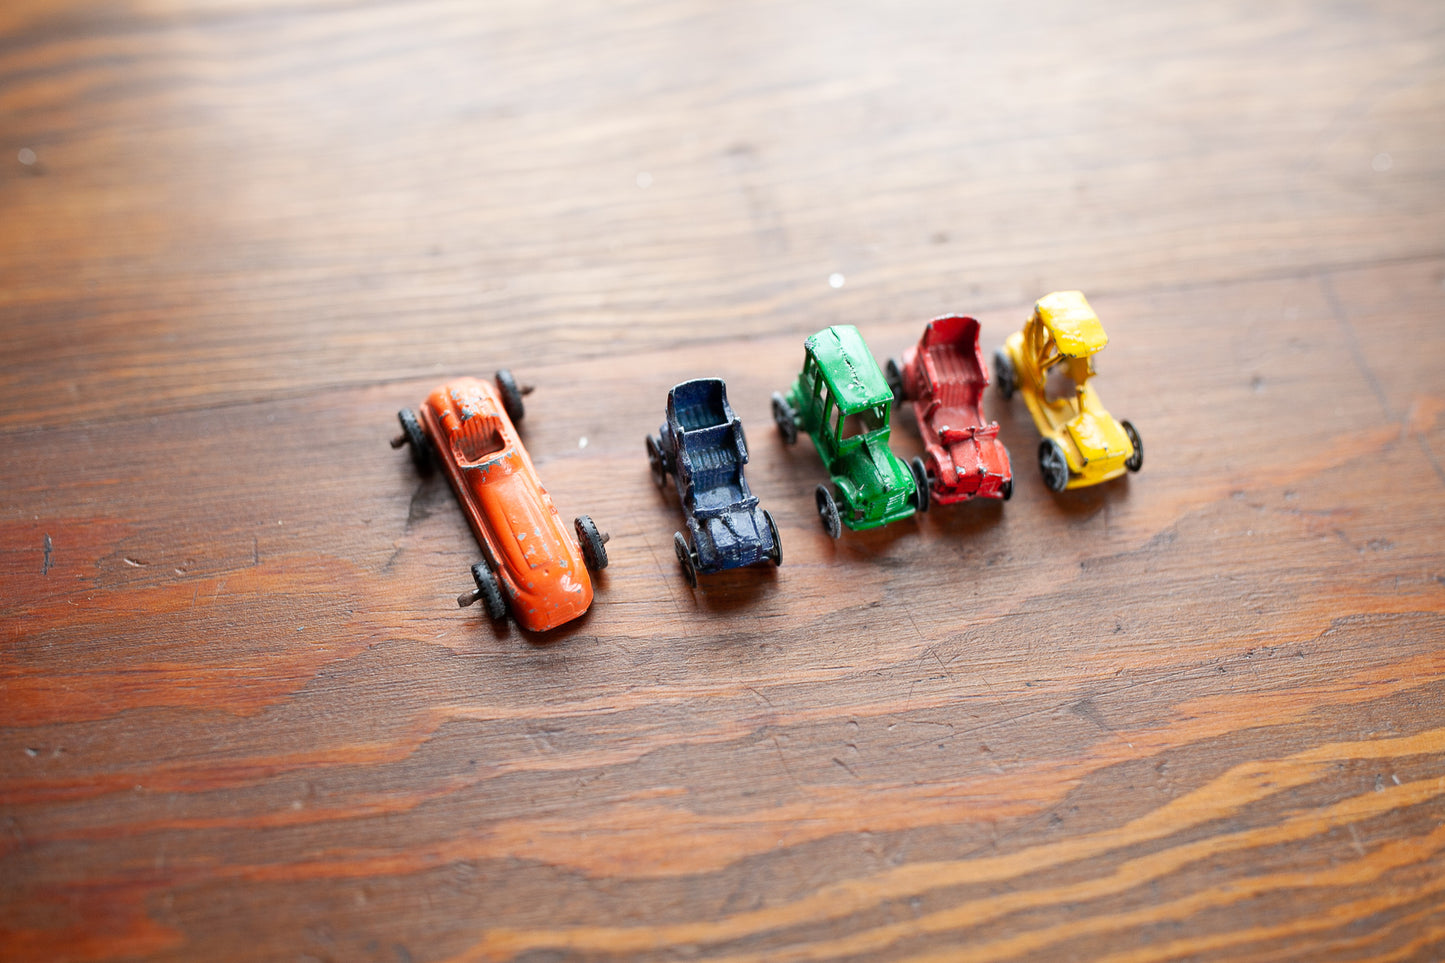 Vintage Metal Cars - Miniature Cars